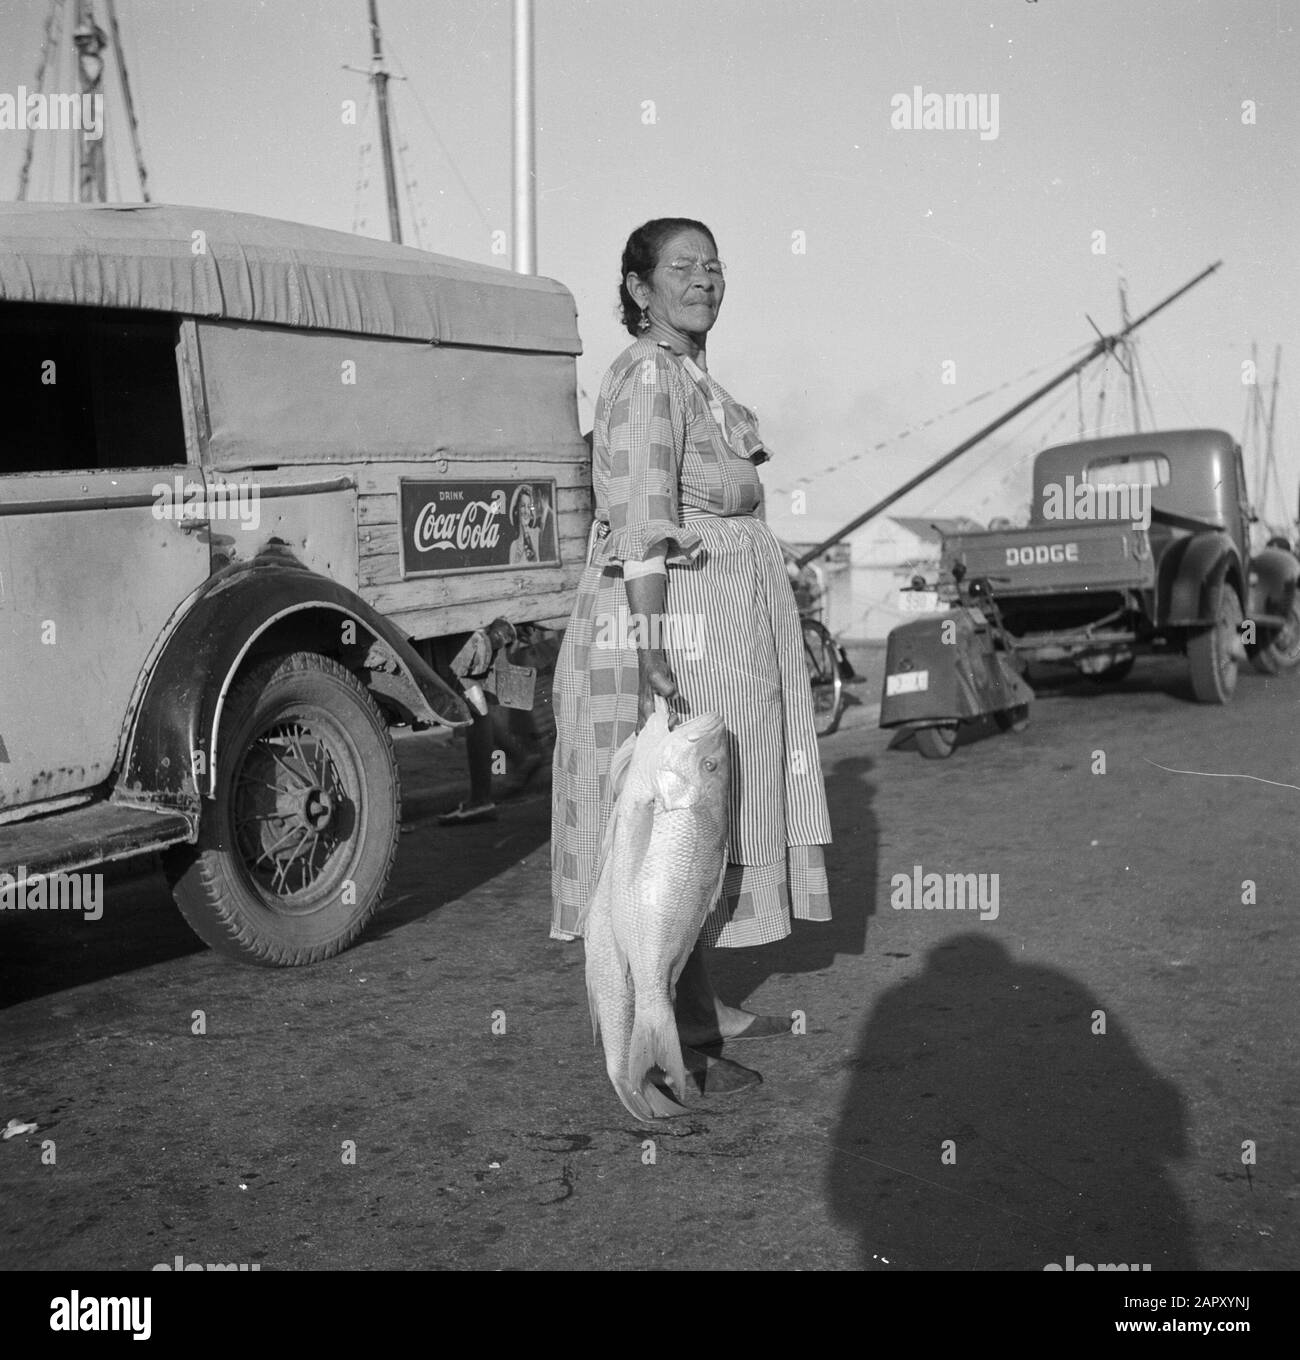 Viaggio in Suriname e Antille Olandesi Donna con pesce al mercato nel porto di Oranjestad su Aruba Data: 1947 posizione: Aruba, Oranjestad Parole Chiave: Automobili, porti, popolazione indigena, mercati, pesce, donne Foto Stock